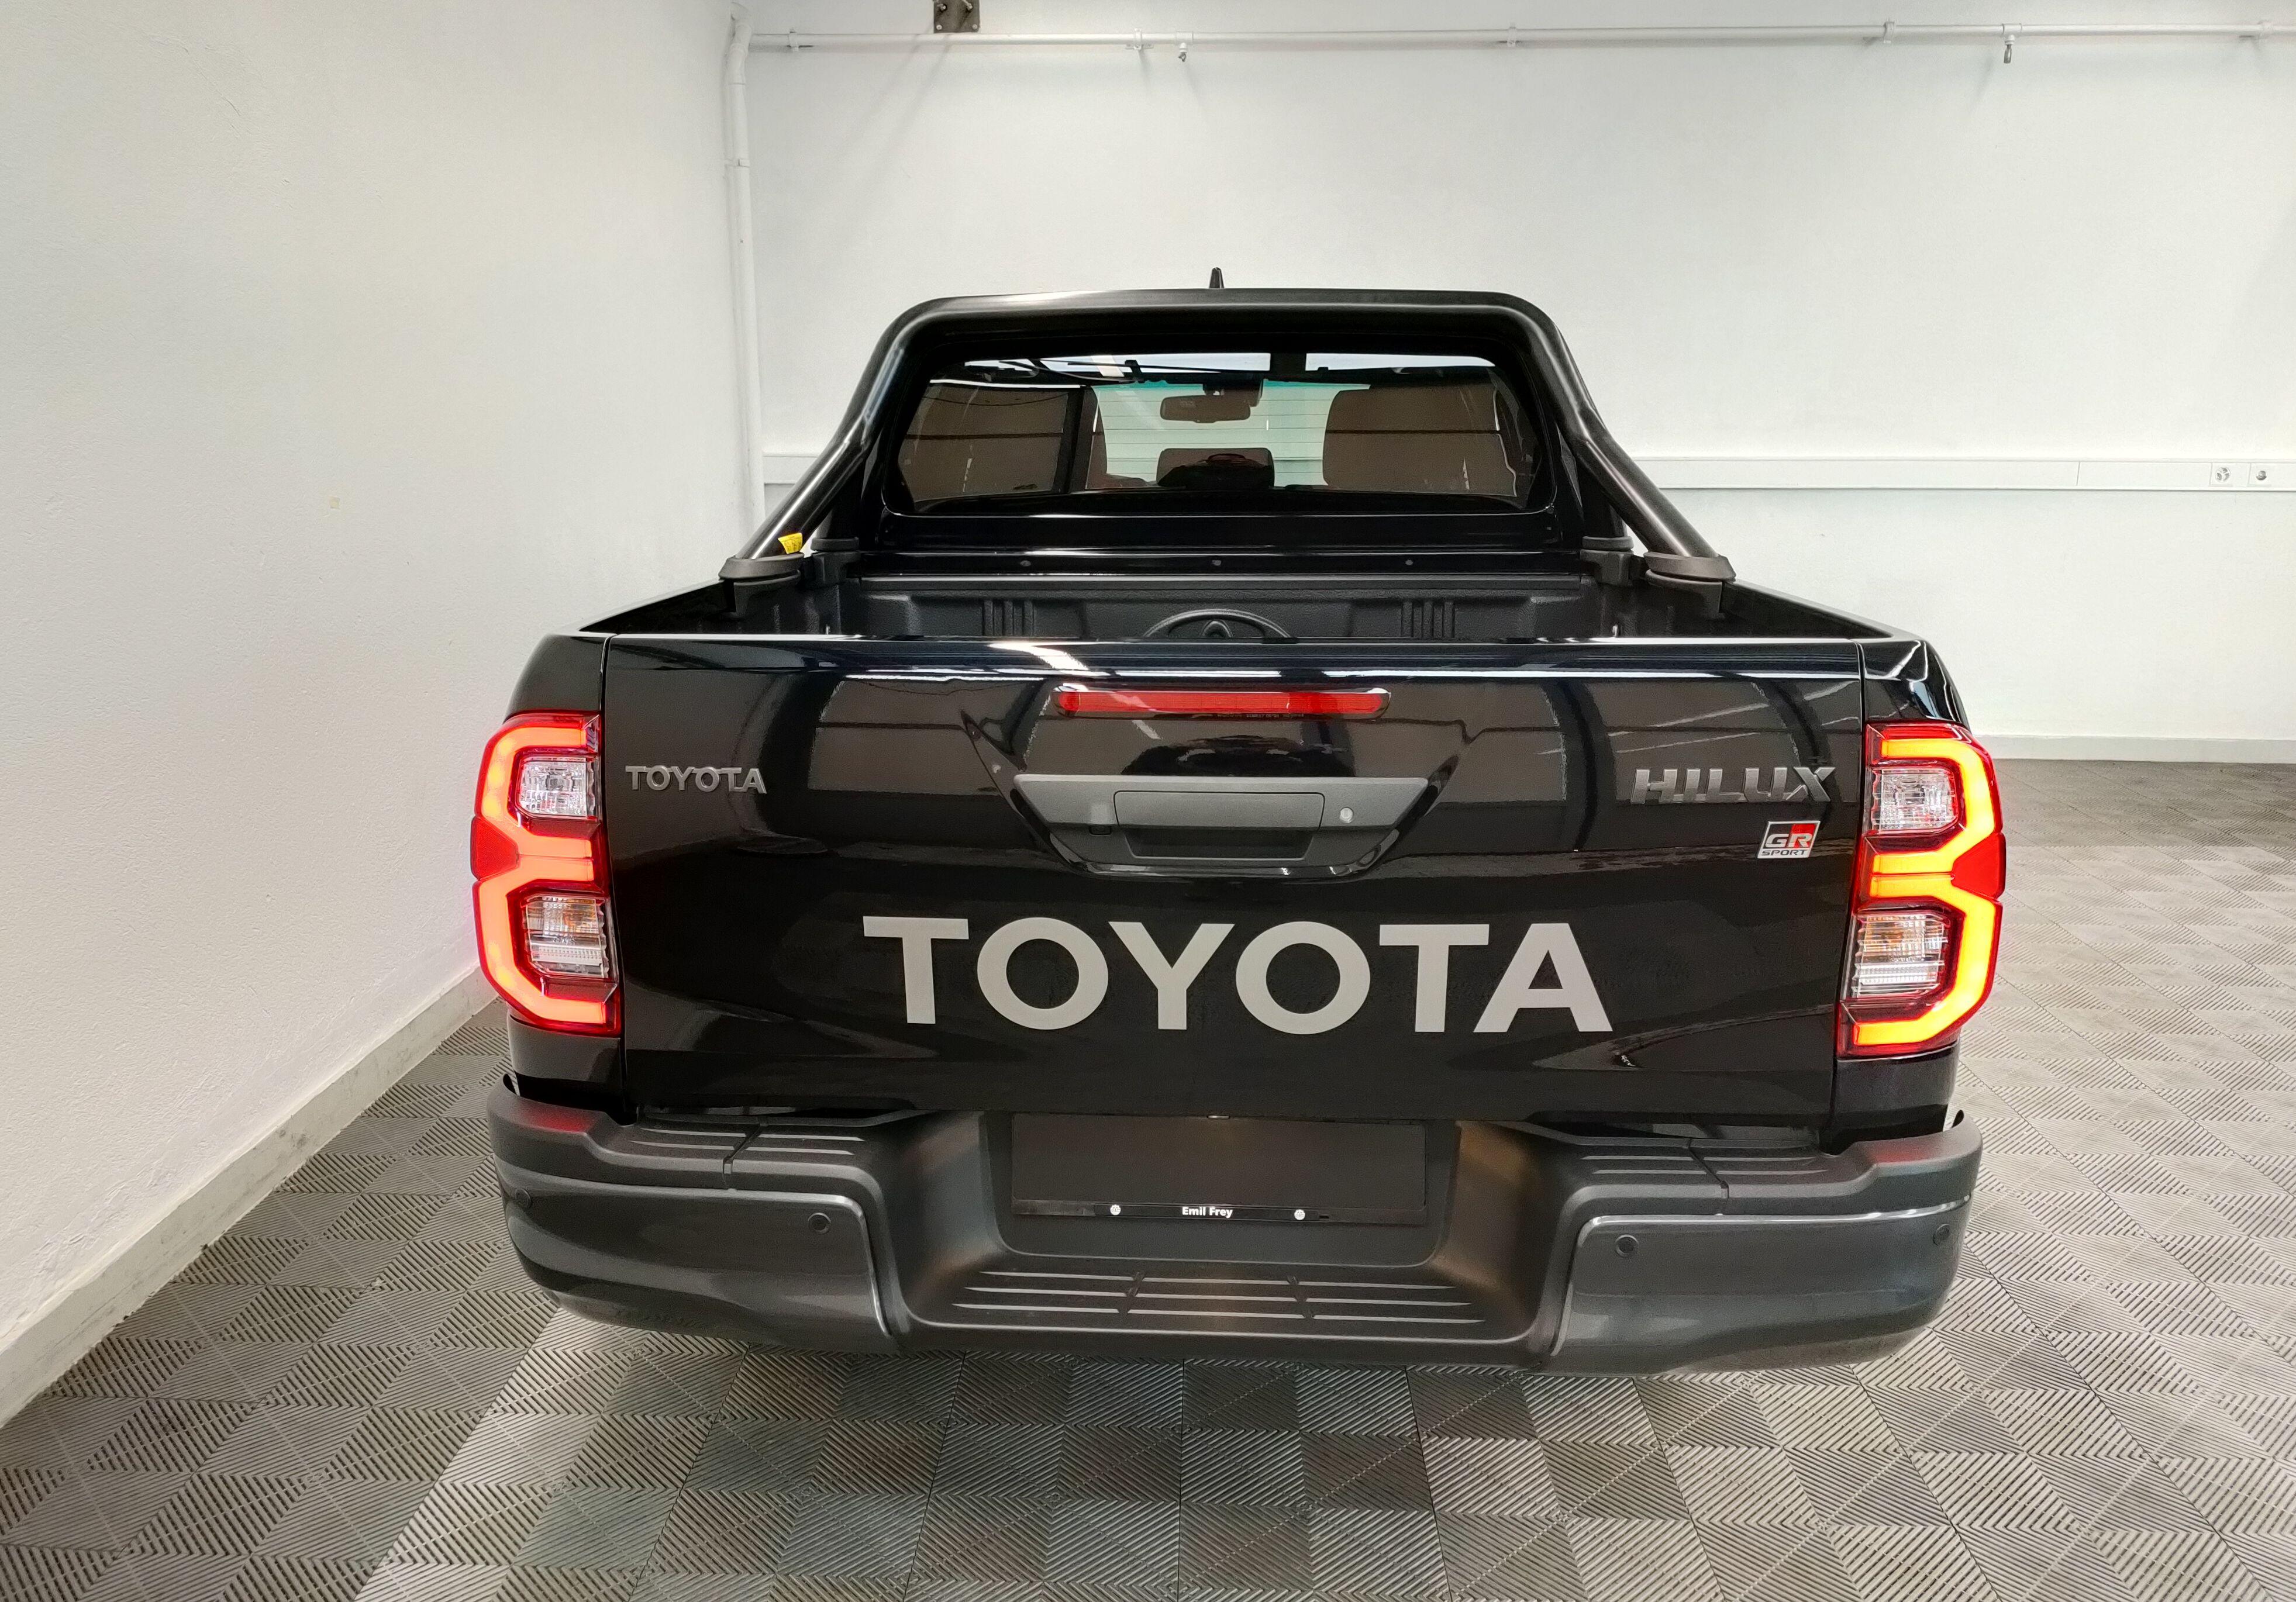 Toyota Hilux, als Occasion oder Neuwagen kaufen oder leasen